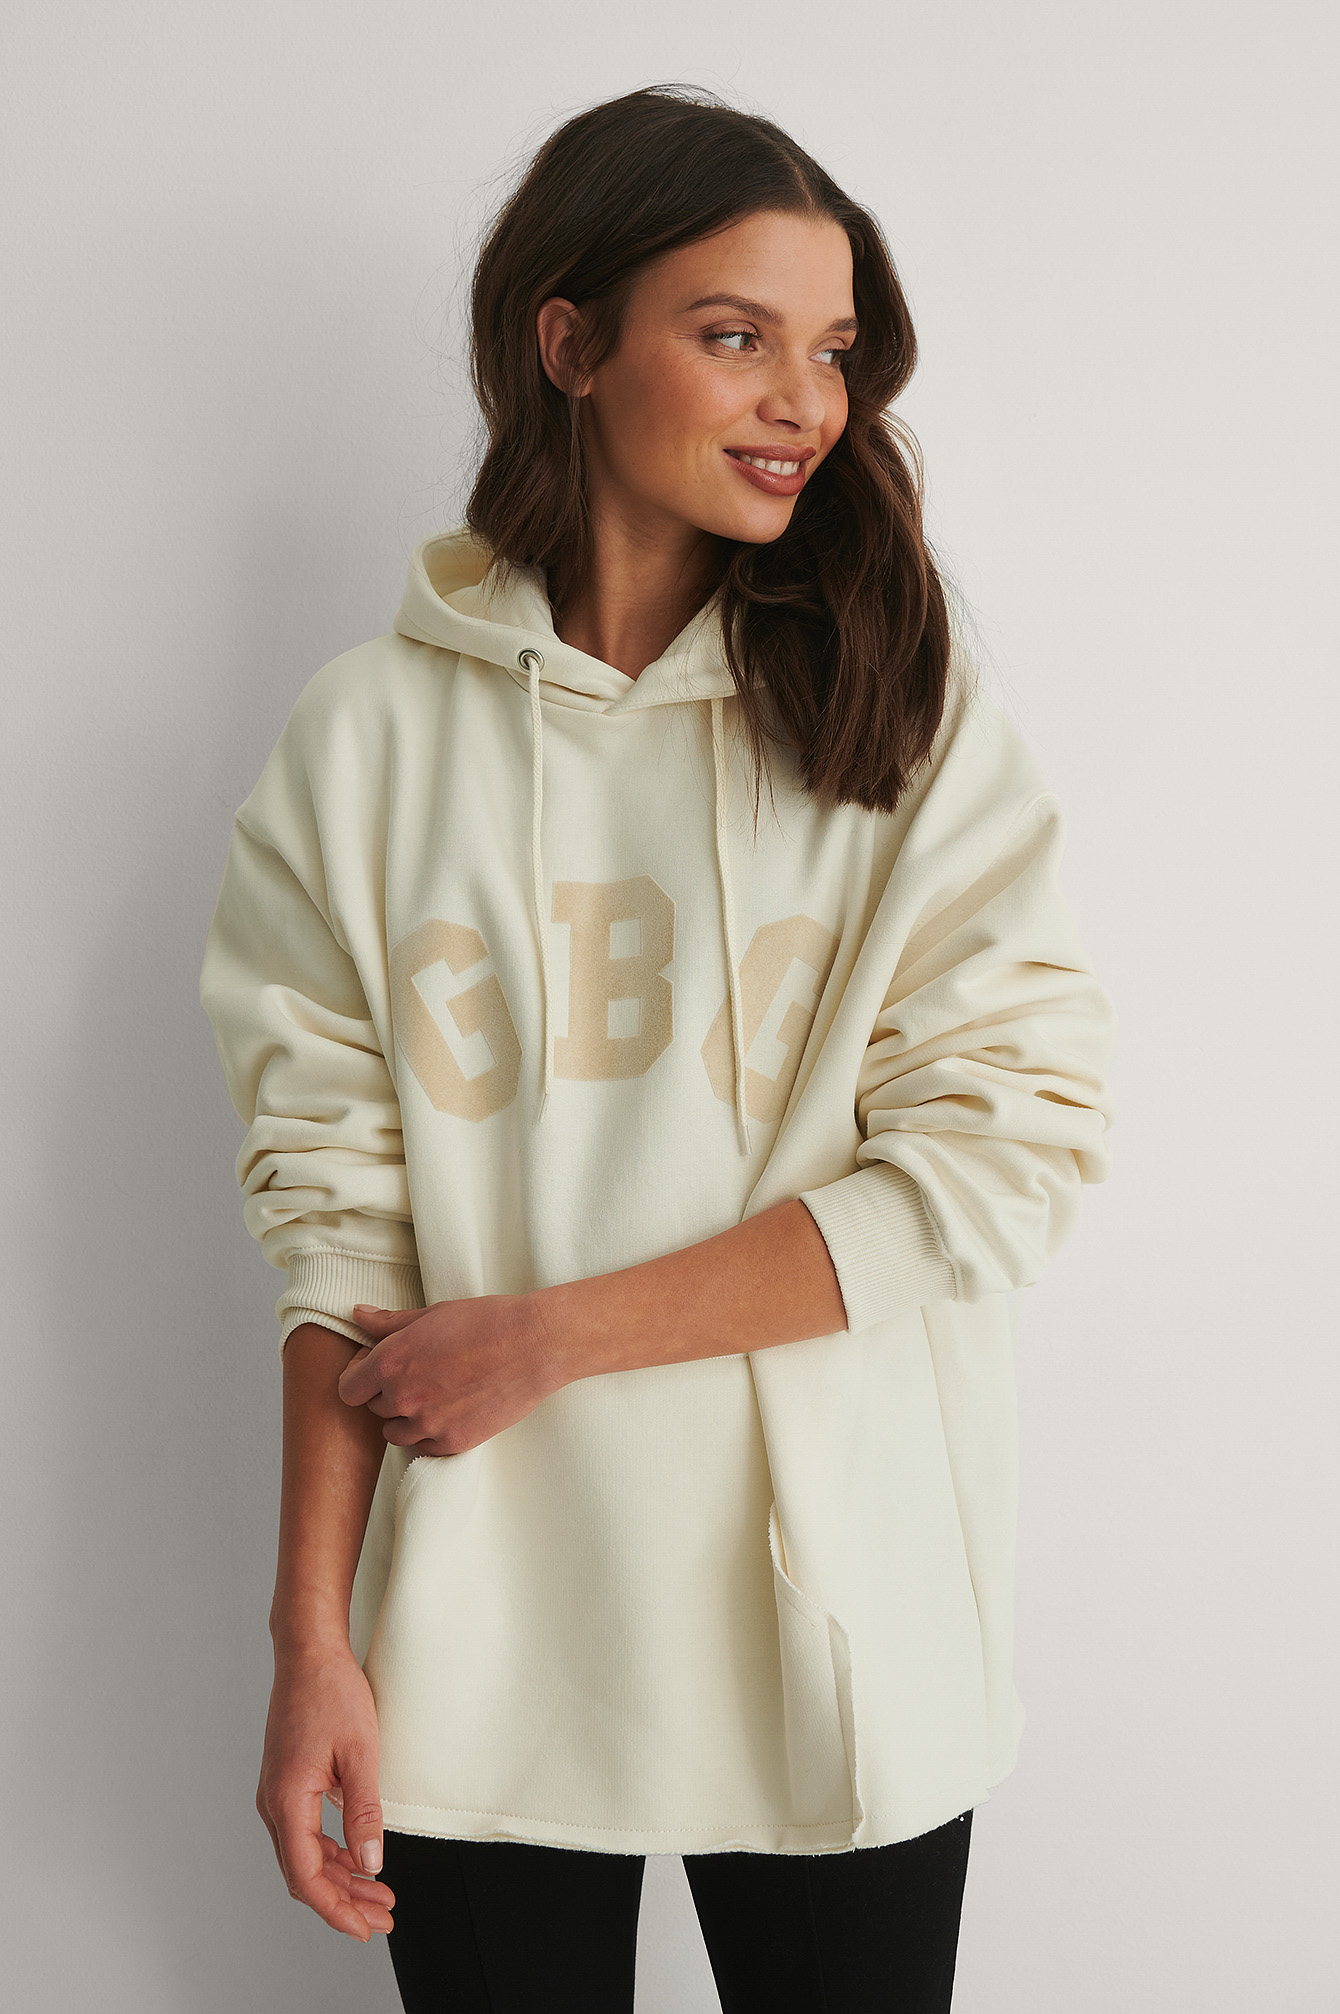 Shop comfy hoodies & sweats at NA-KD